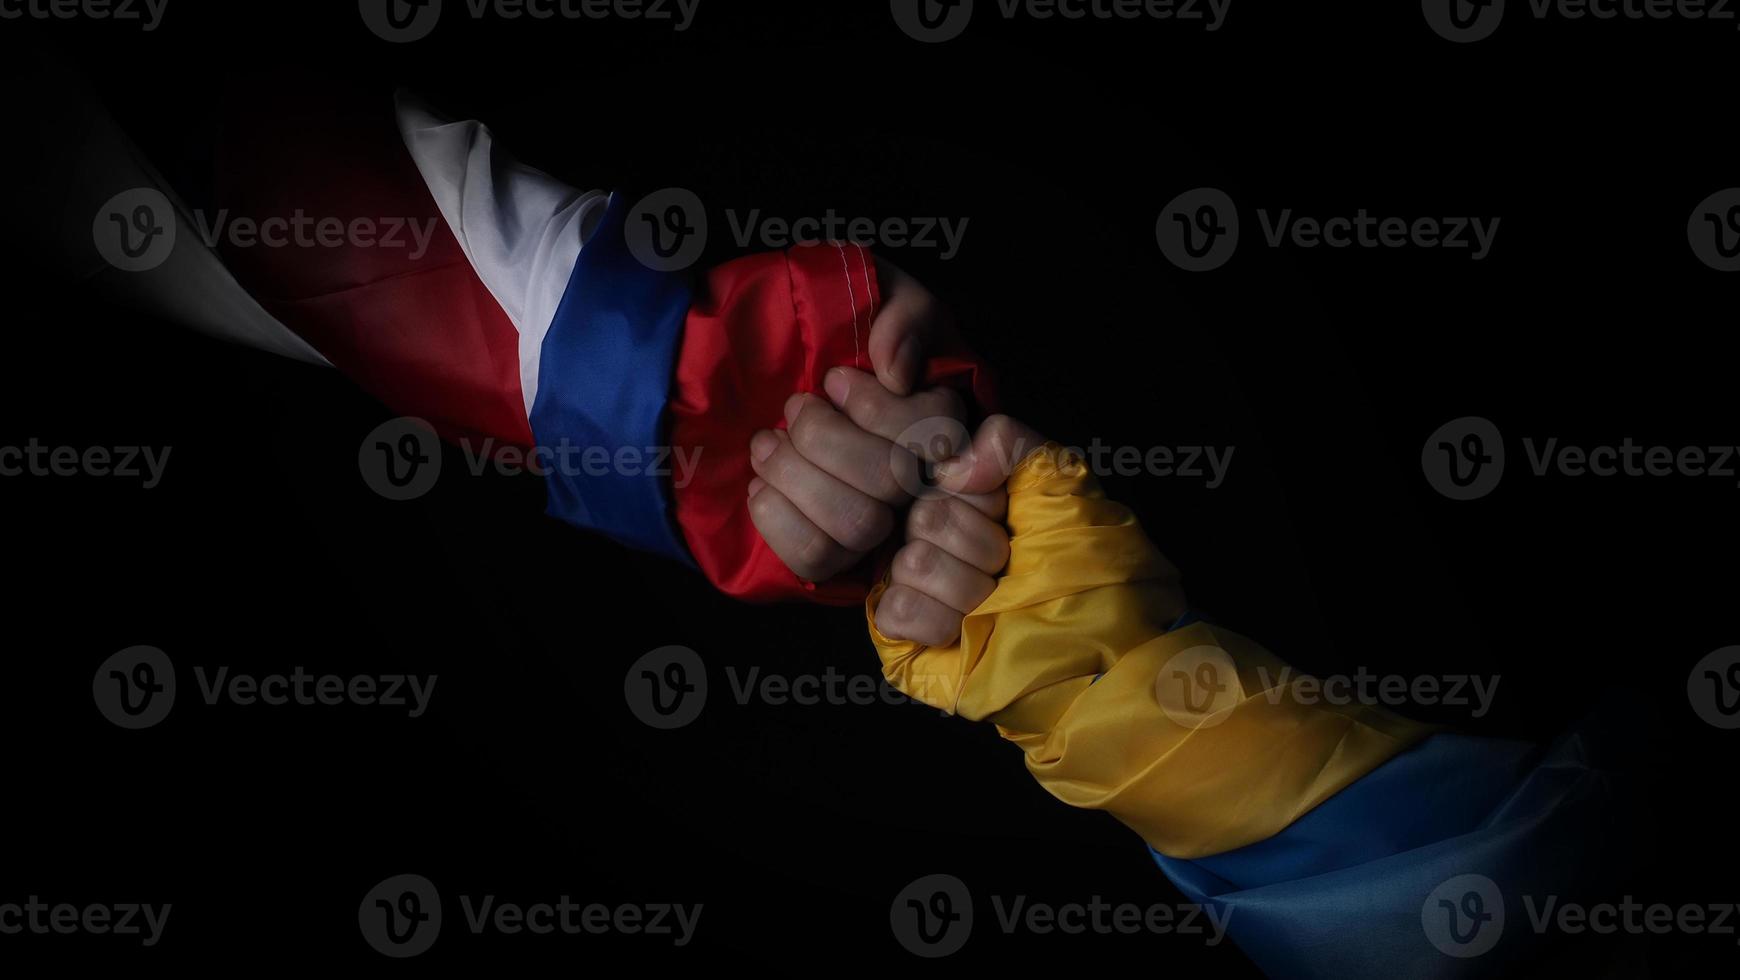 bandera rusa y bandera de ucrania en las manos que muestran el símbolo de la guerra de lucha foto